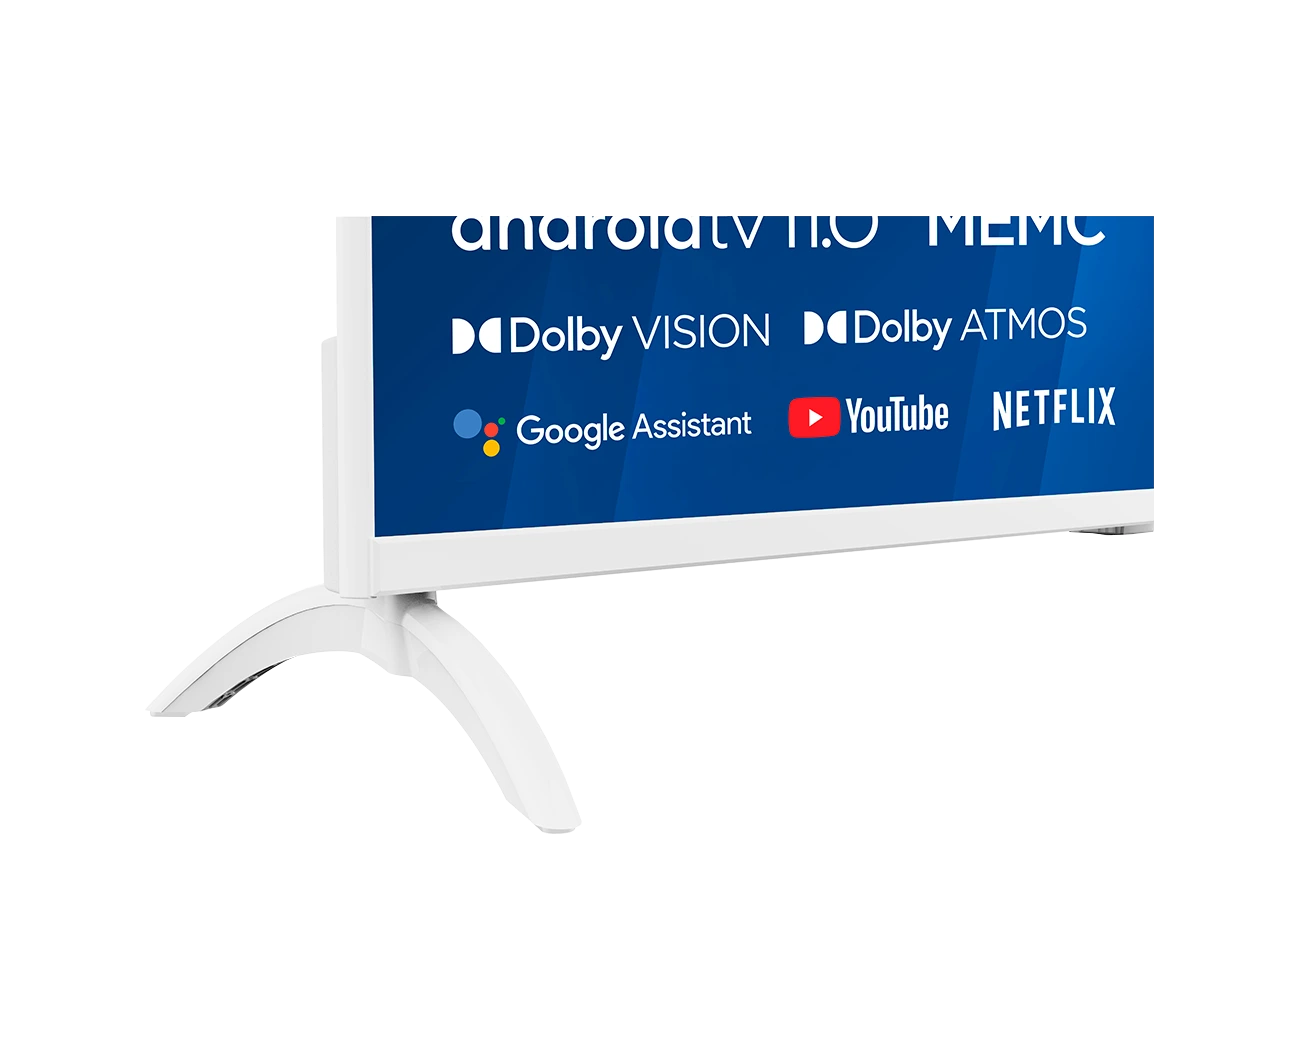 Телевизор UHD 4K Android TV Blaupunkt 43UBC6010